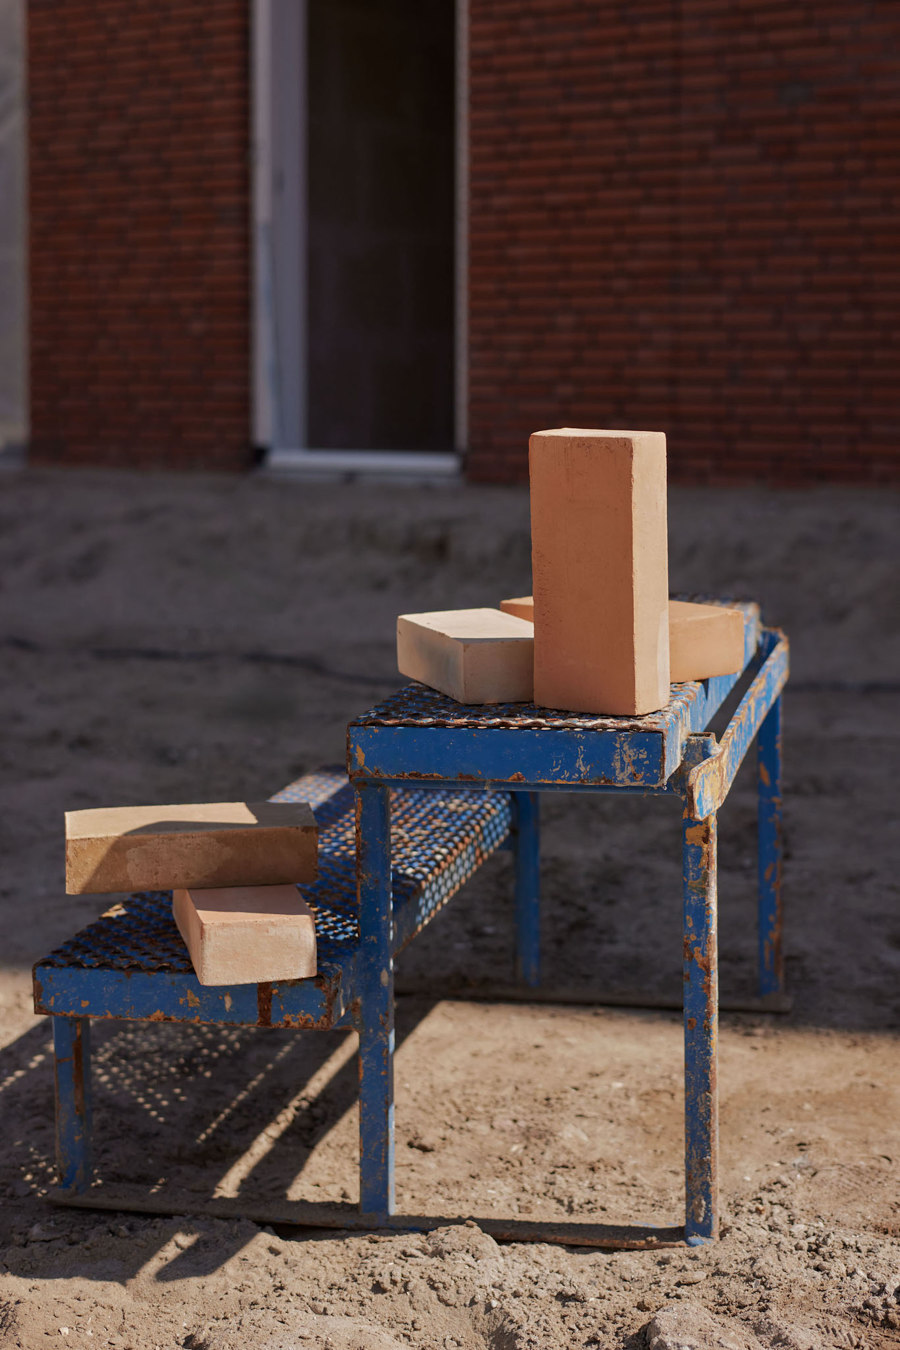 Rethinking brick at Dutch Design Week 2023 | News